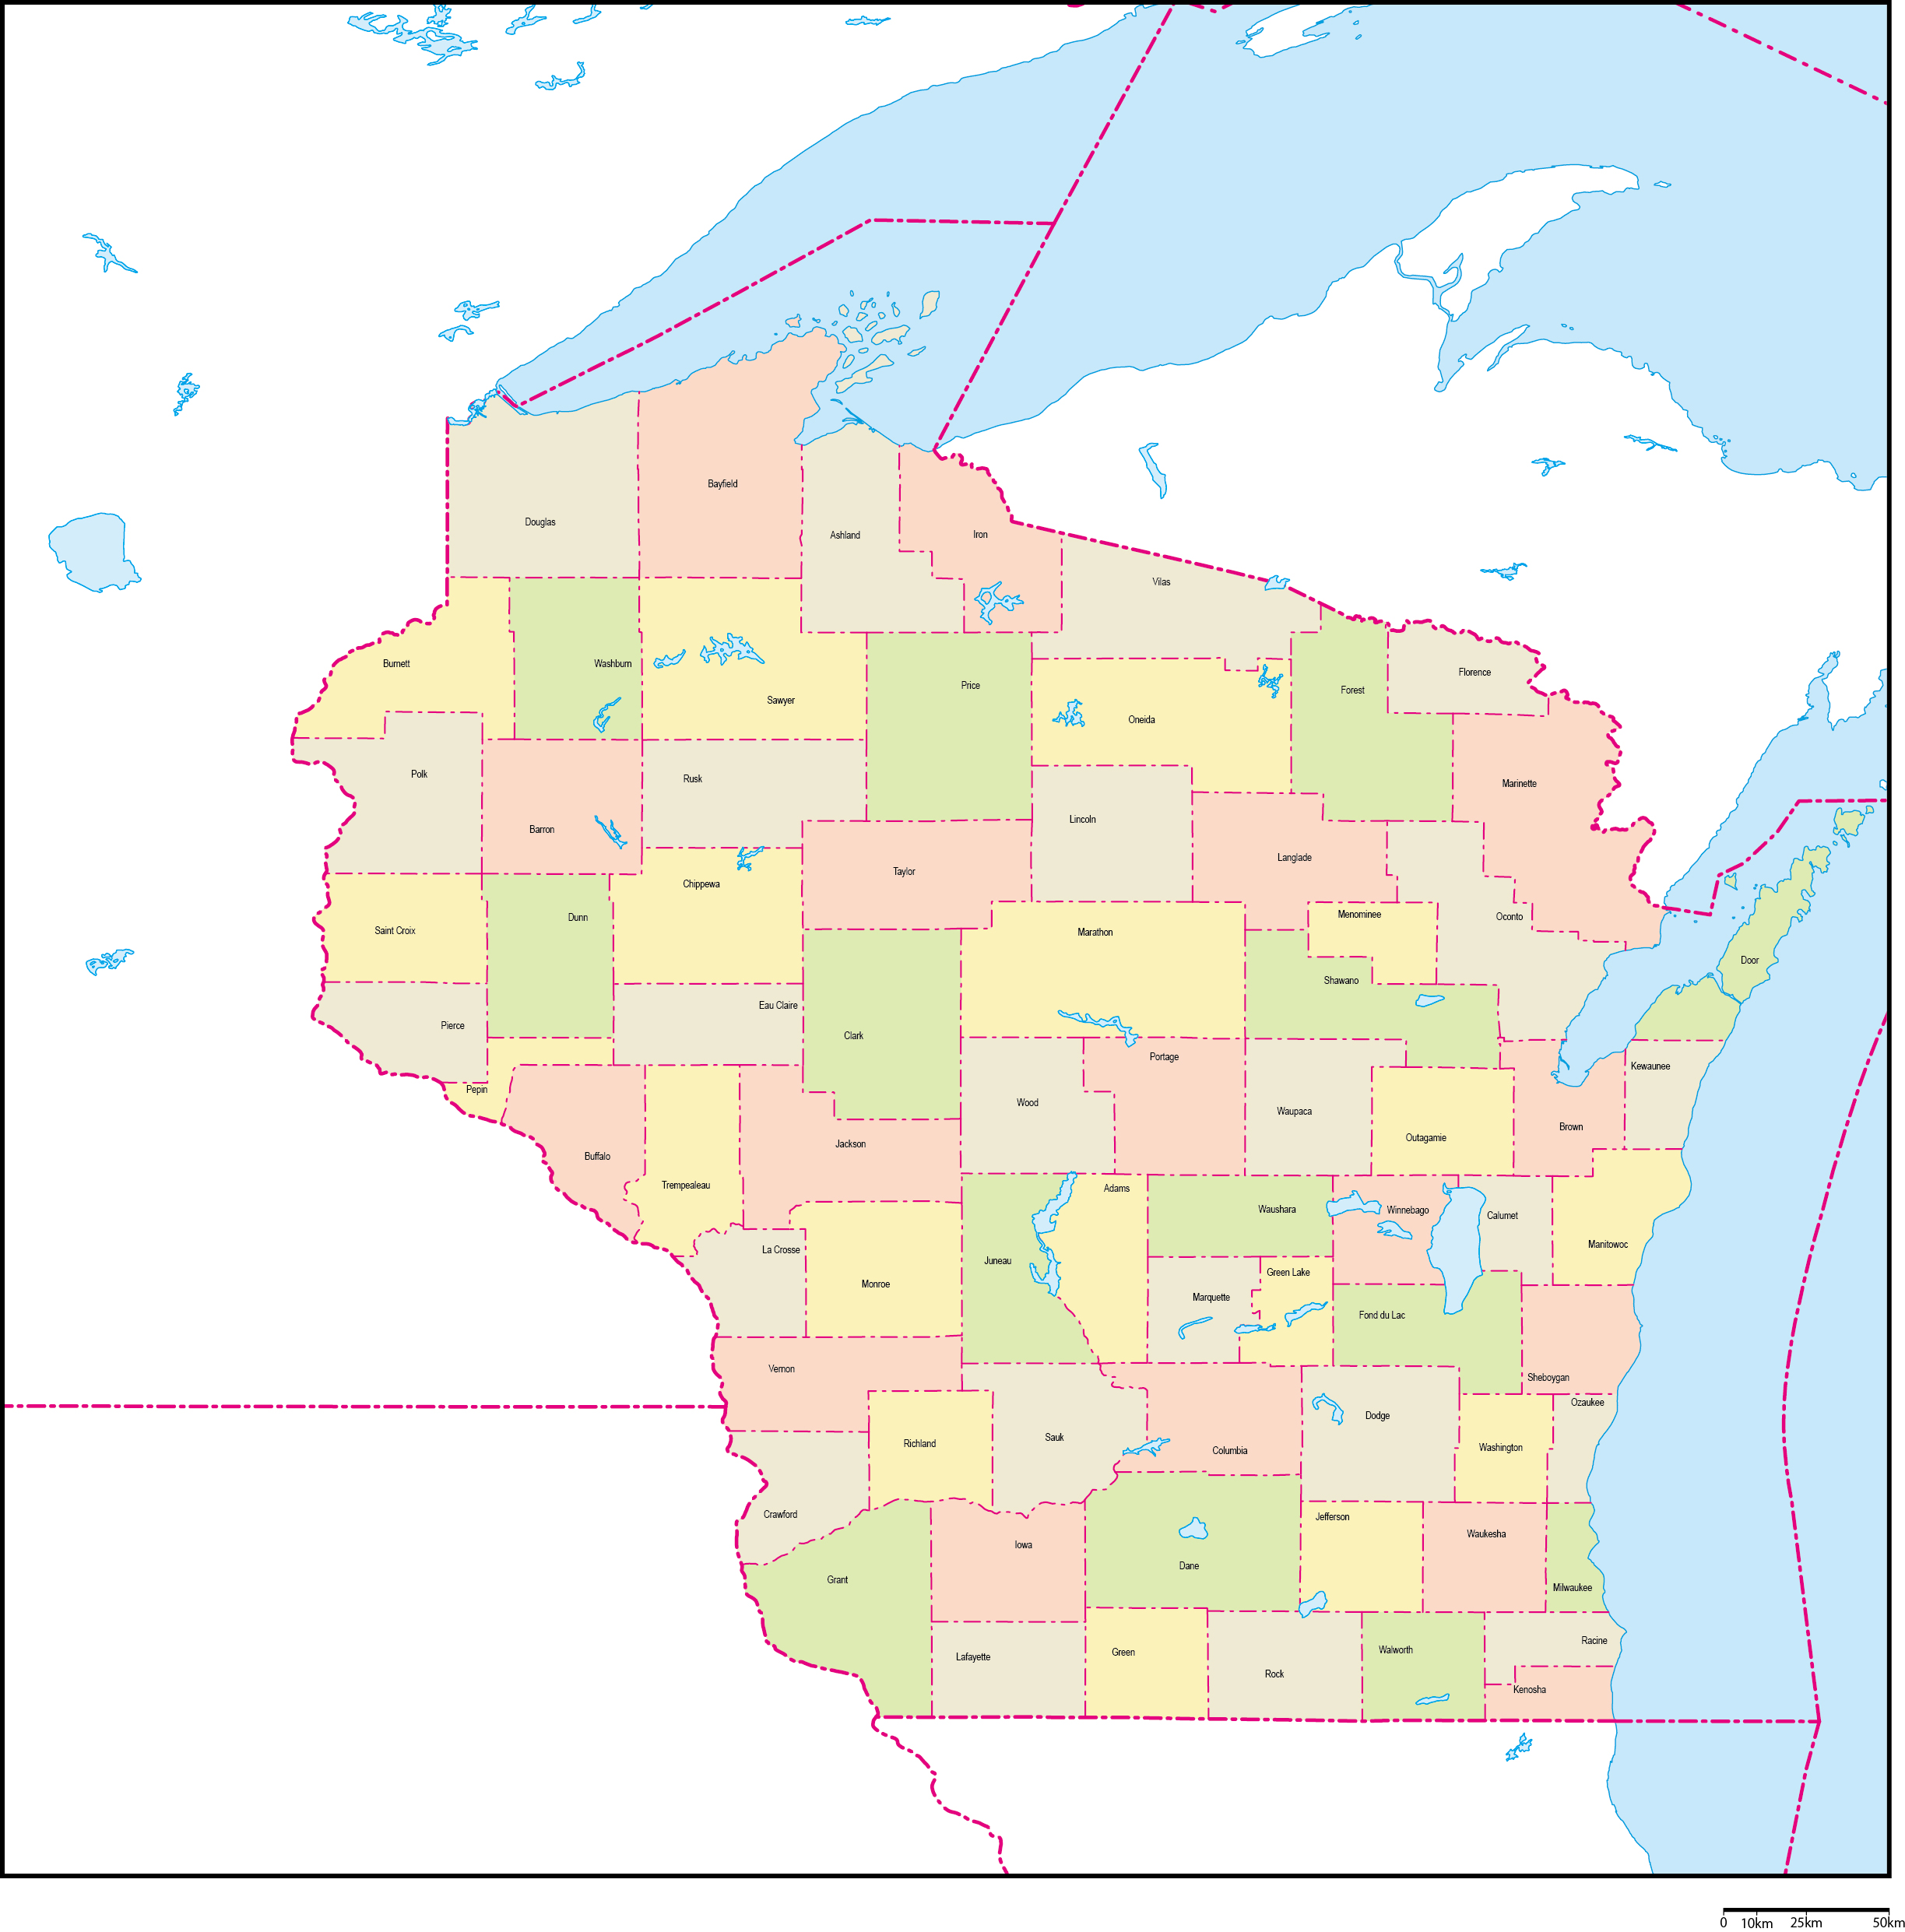 ウィスコンシン州郡色分け地図郡名あり(英語)フリーデータの画像